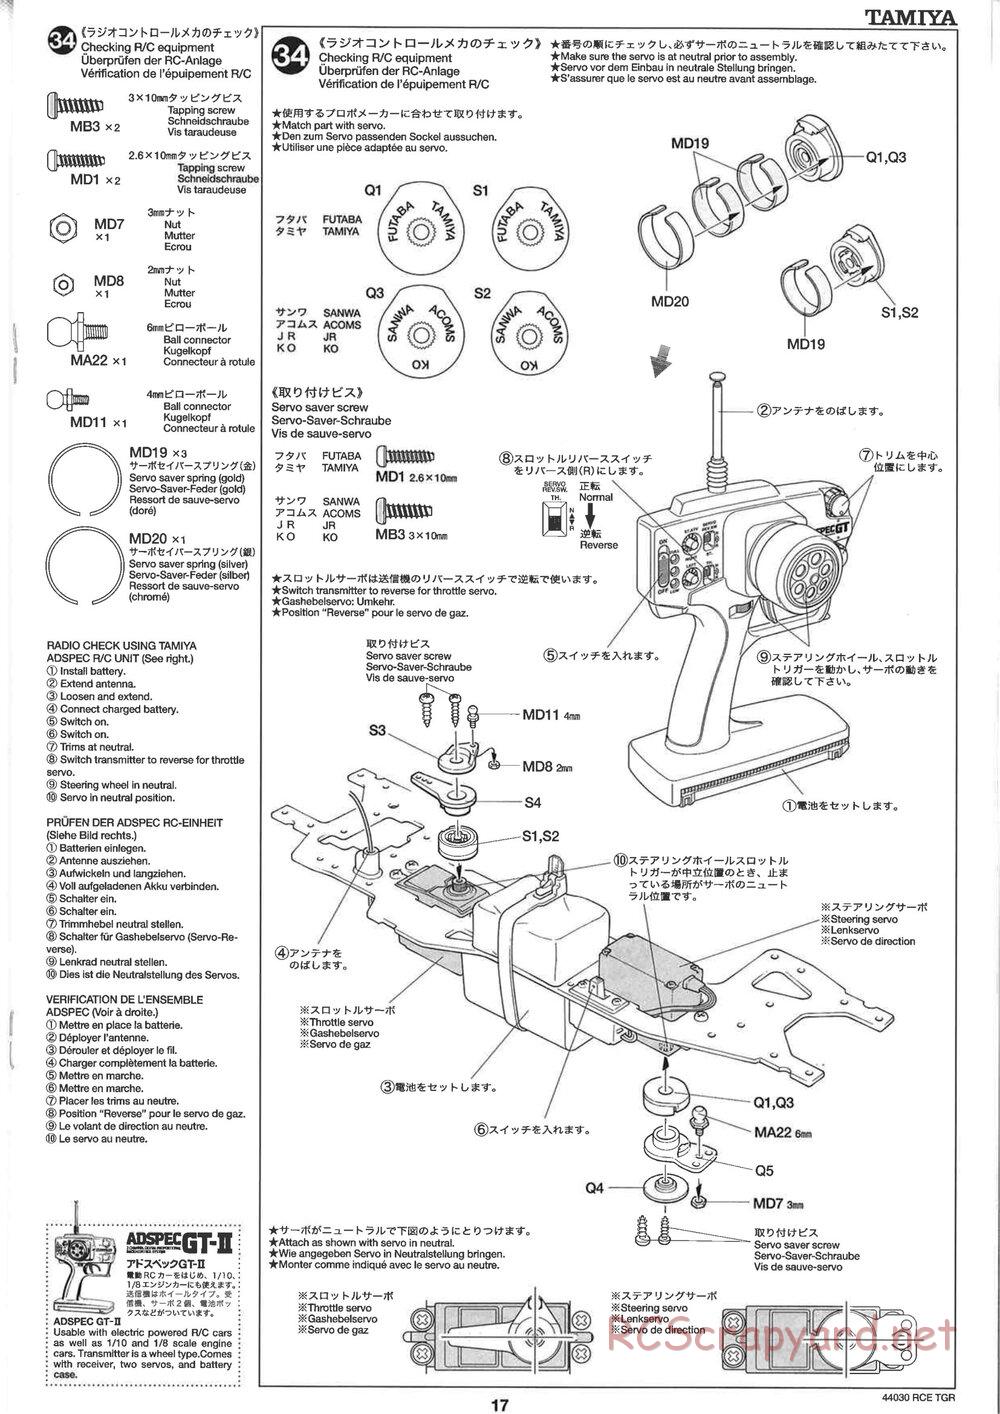 Tamiya - TGR Chassis - Manual - Page 17